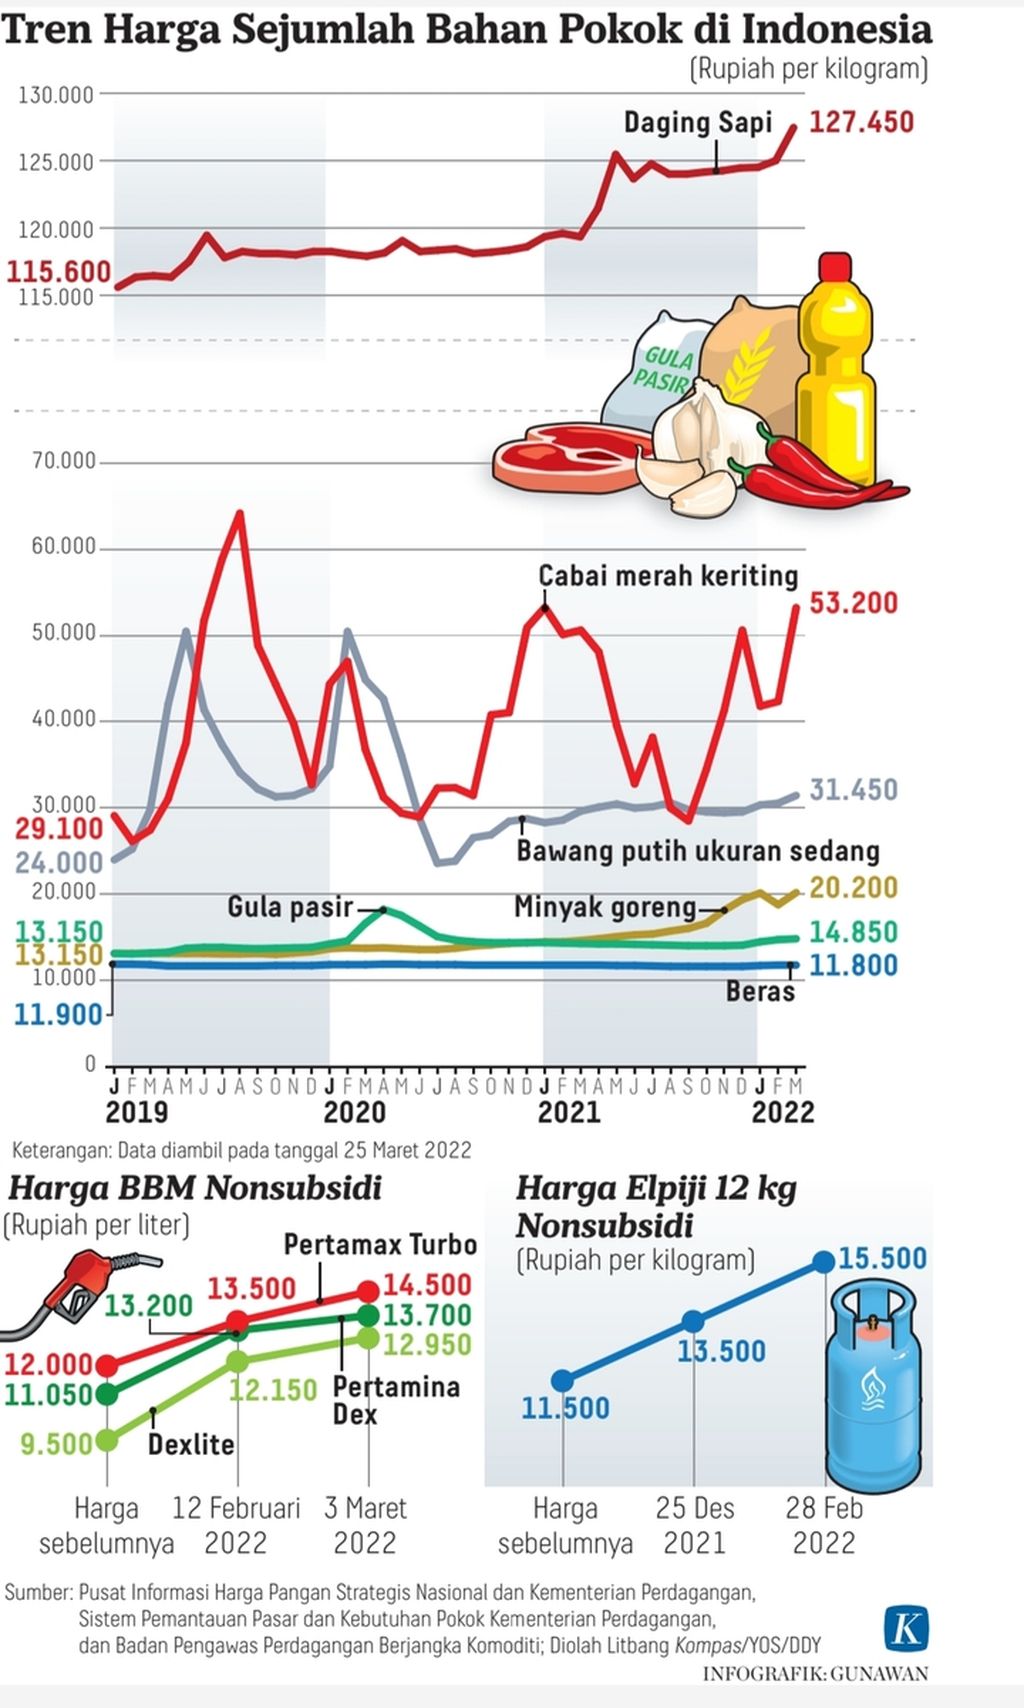 Infografik Tren Harga Sejumlah Bahan Pokok di Indonesia. Per 28 Februari 2022.